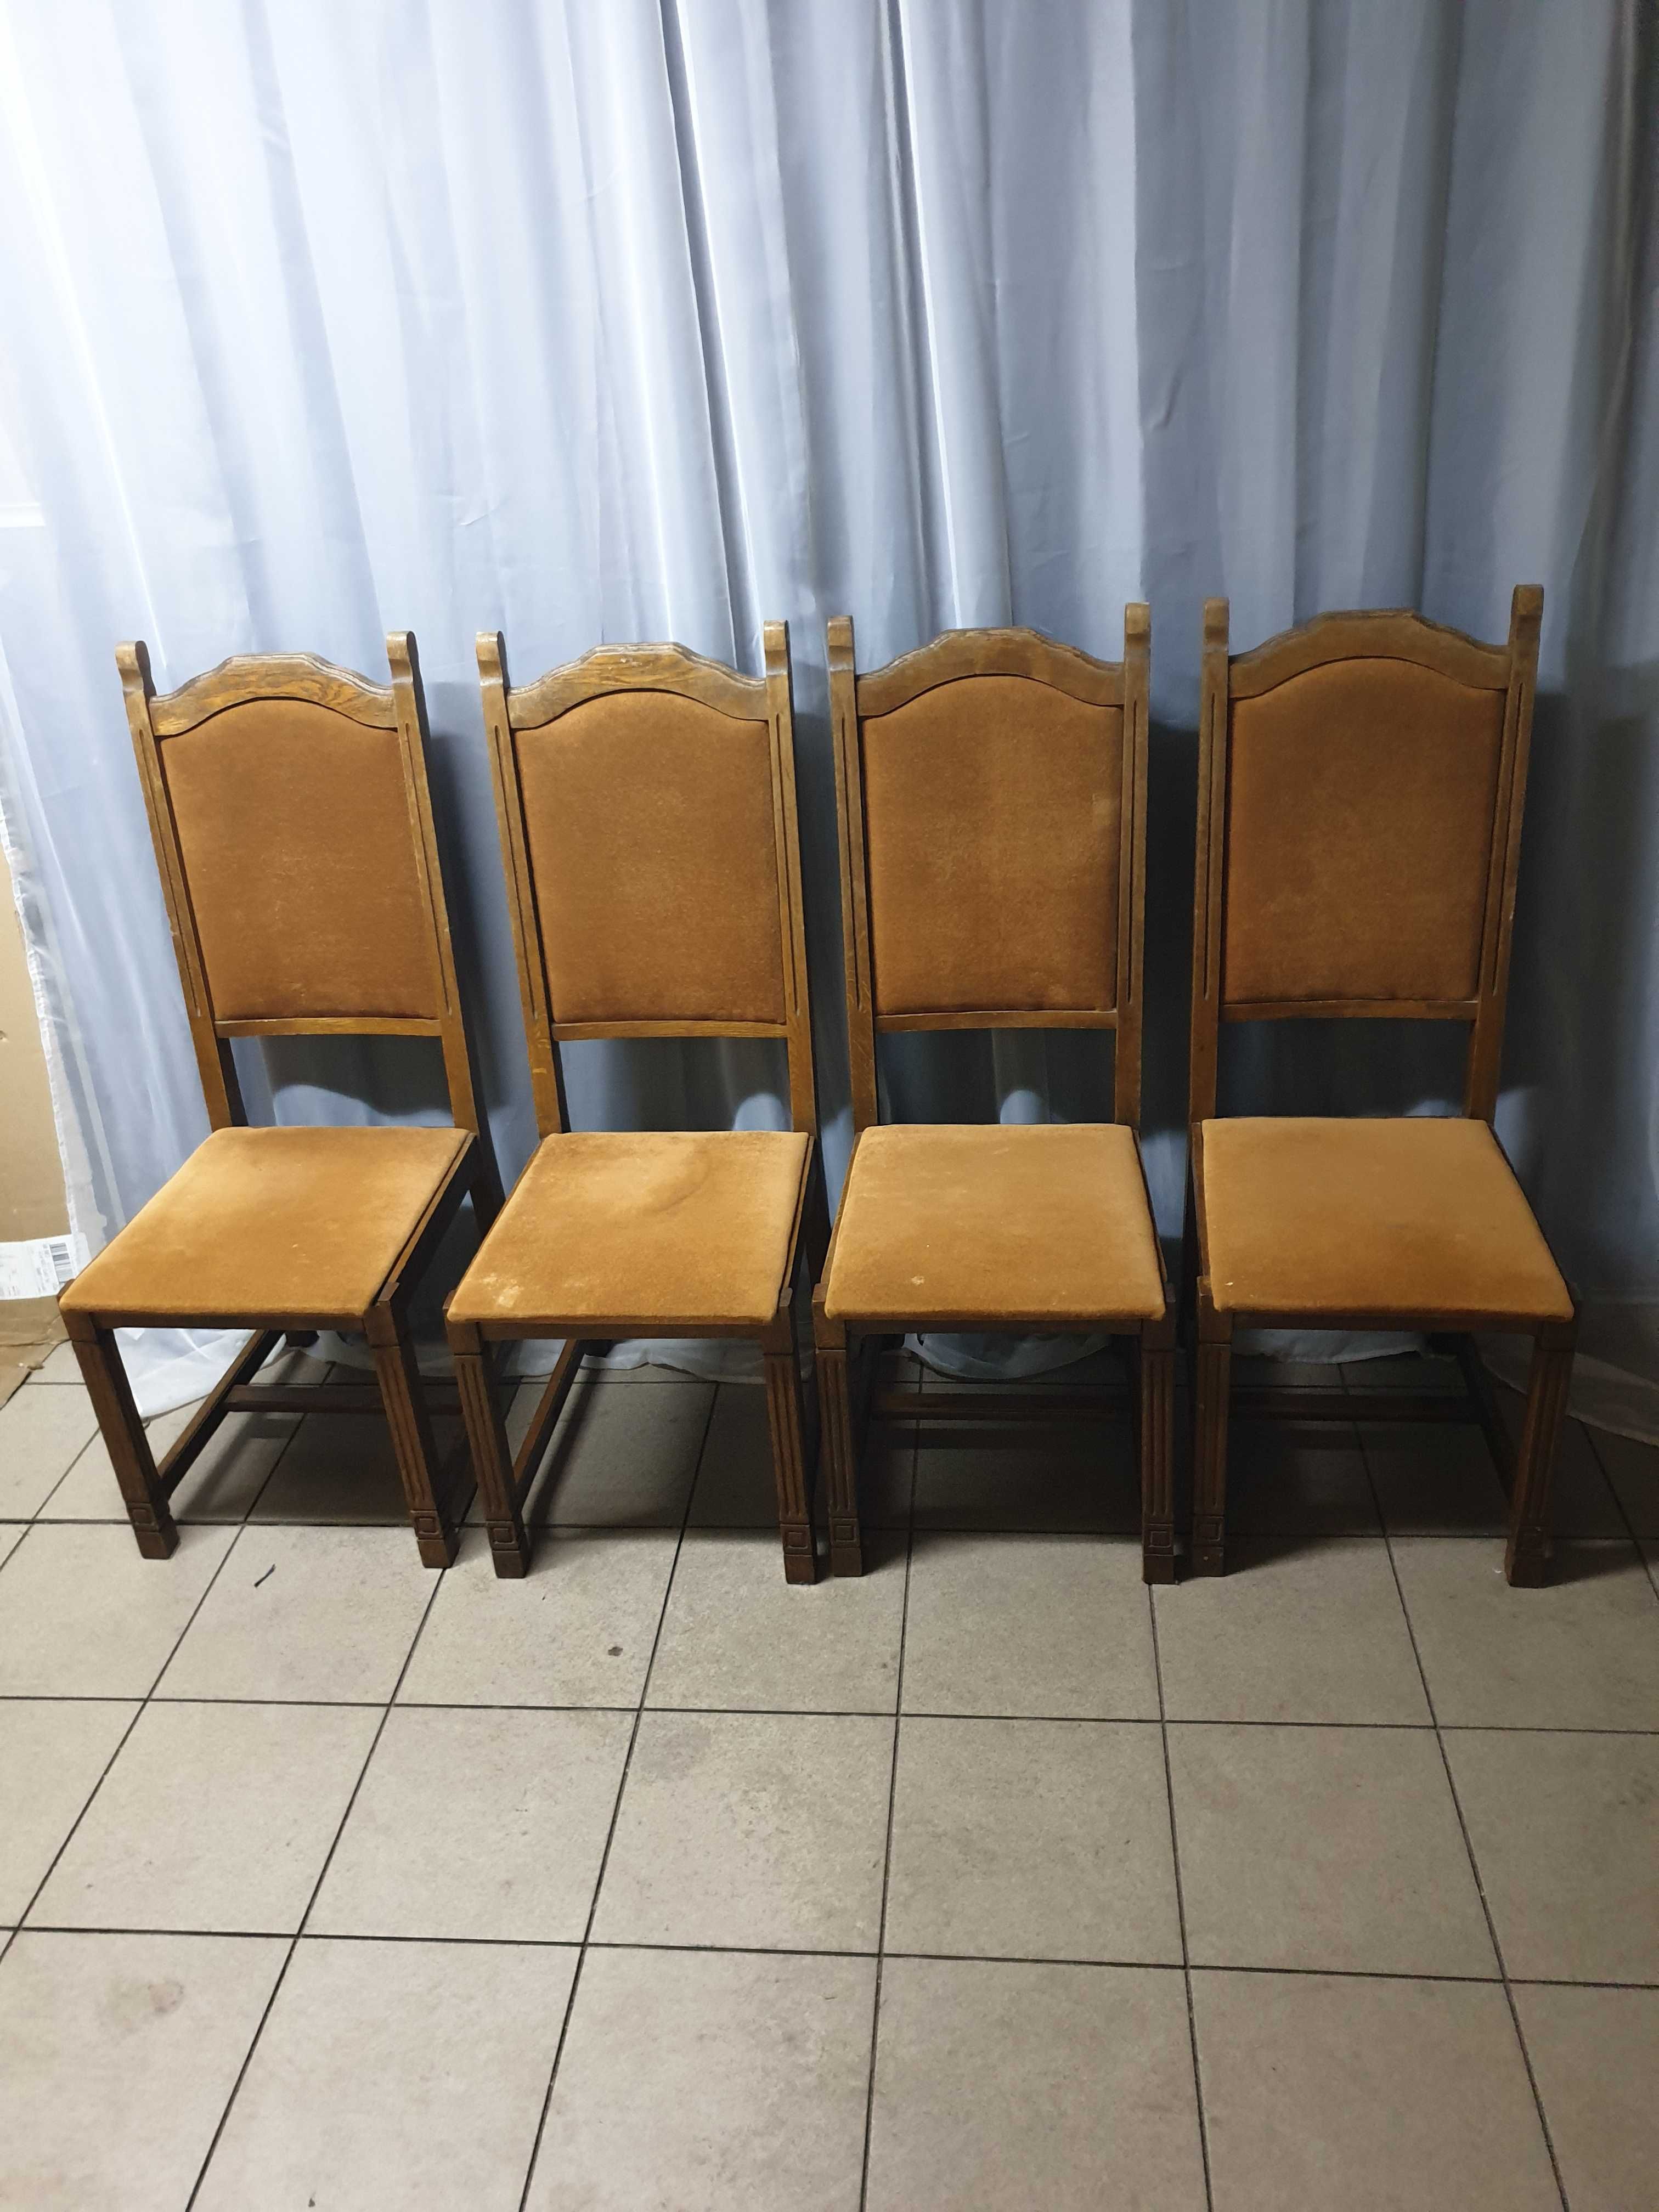 Zestaw stół z krzeslami krzesla stół+krzesla zestaw krzesel